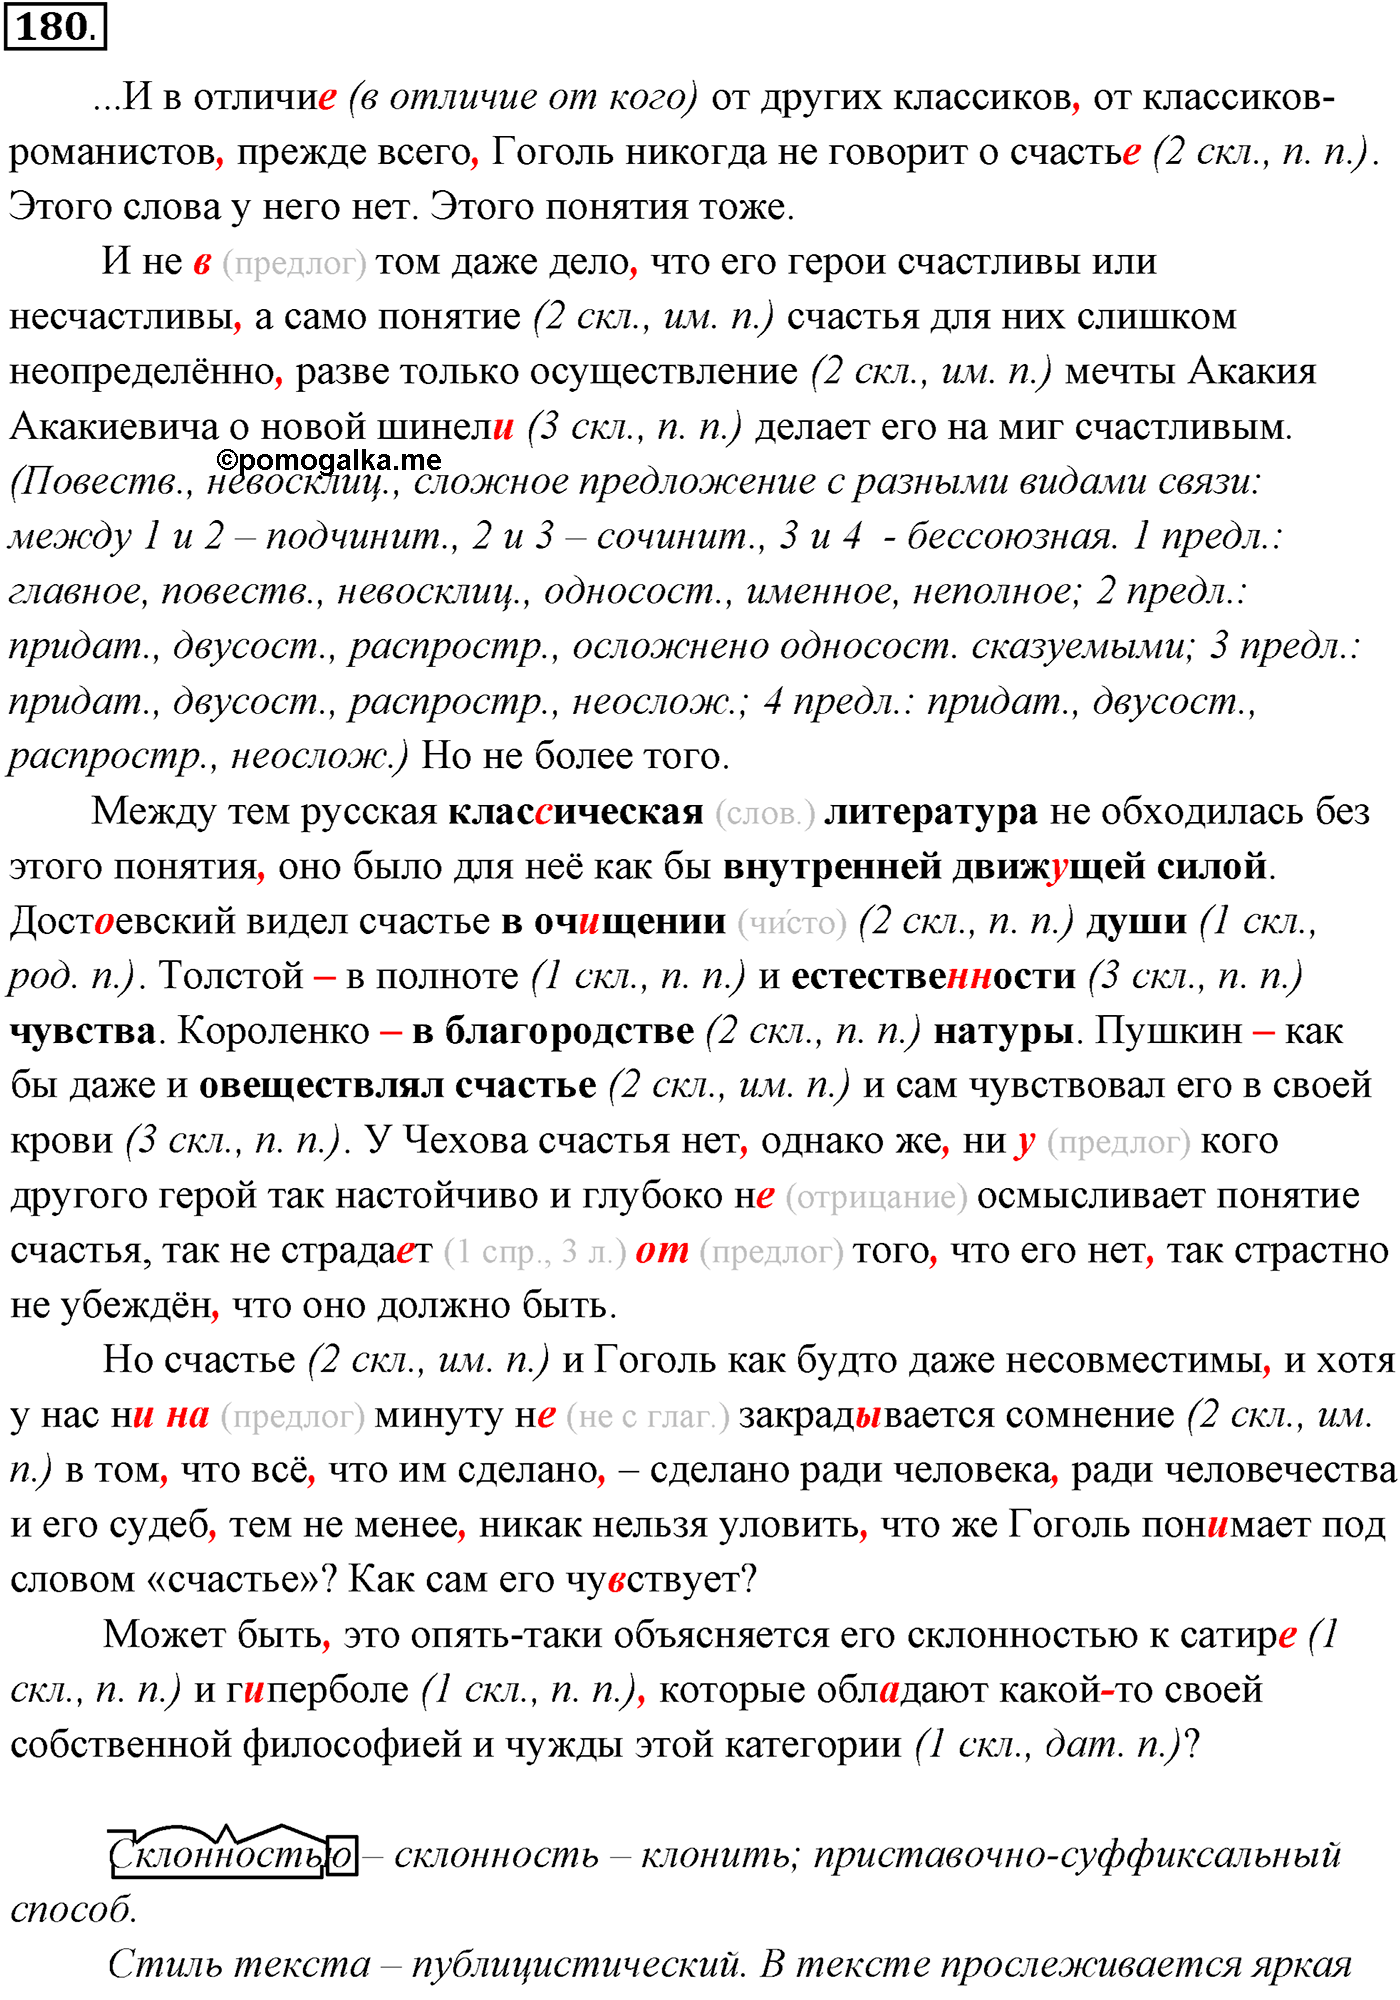 упражнение №180 русский язык 10-11 класс Власенков